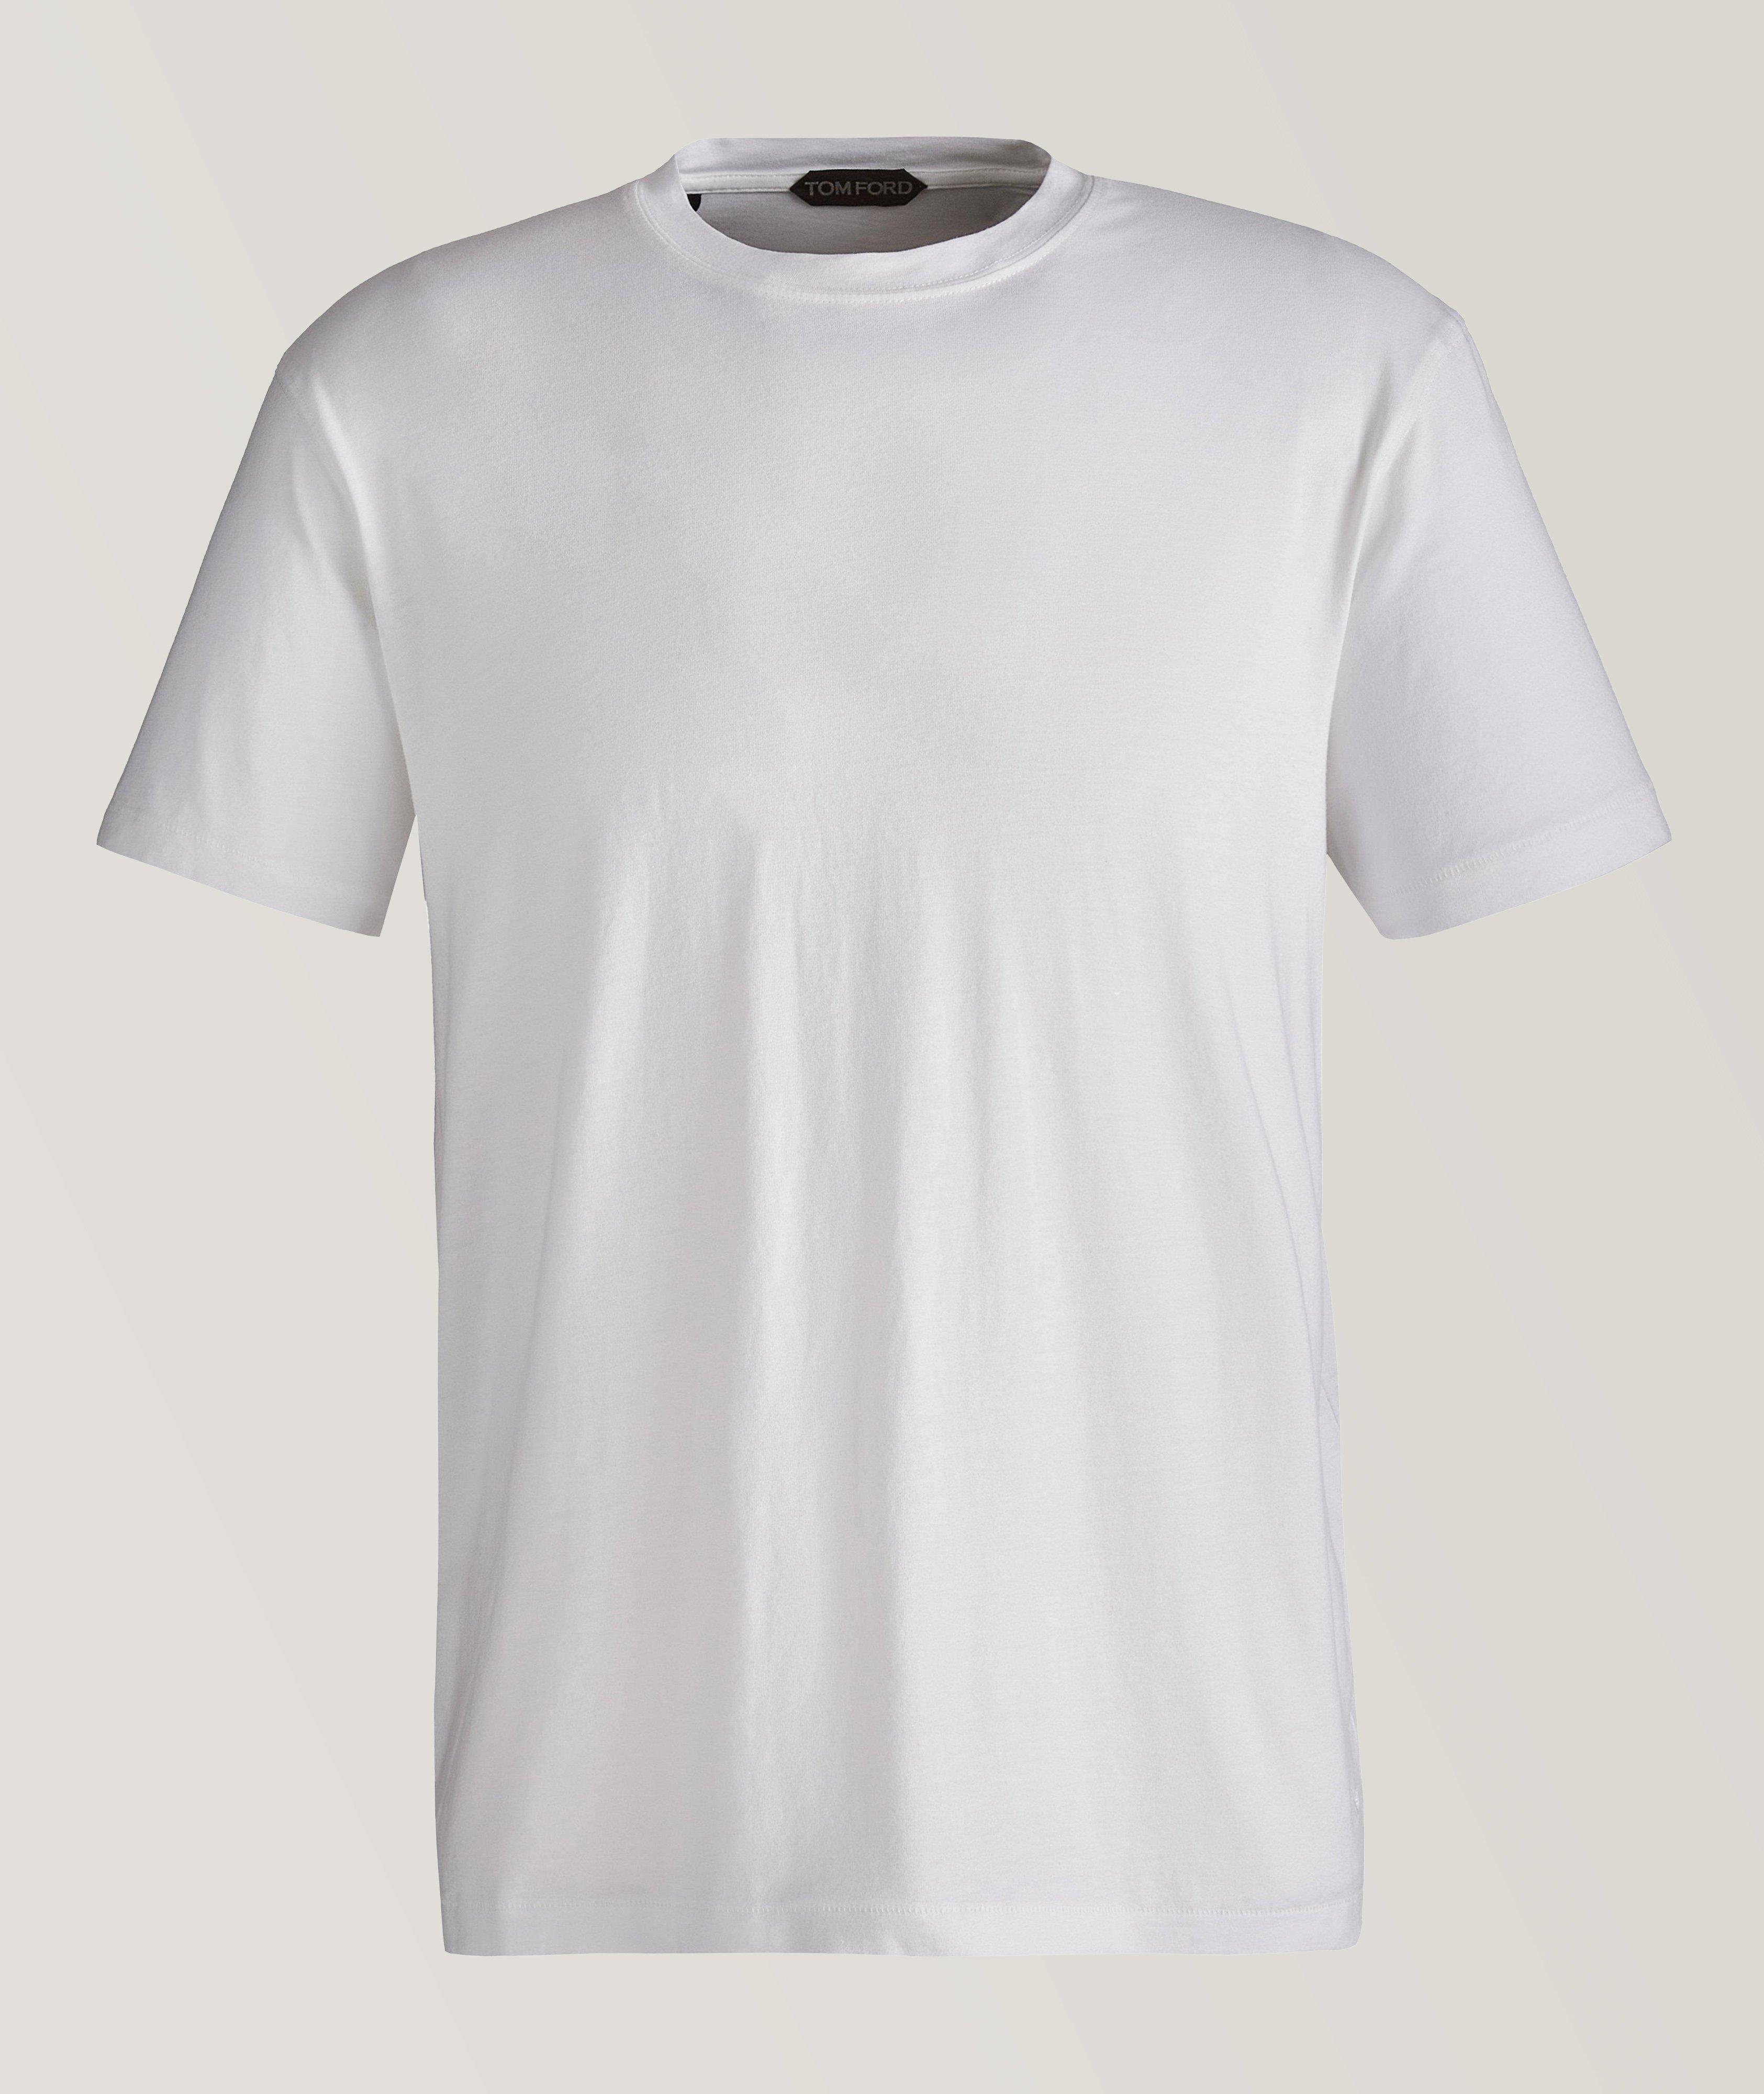 T-shirt en jersey de lyocell et coton image 0